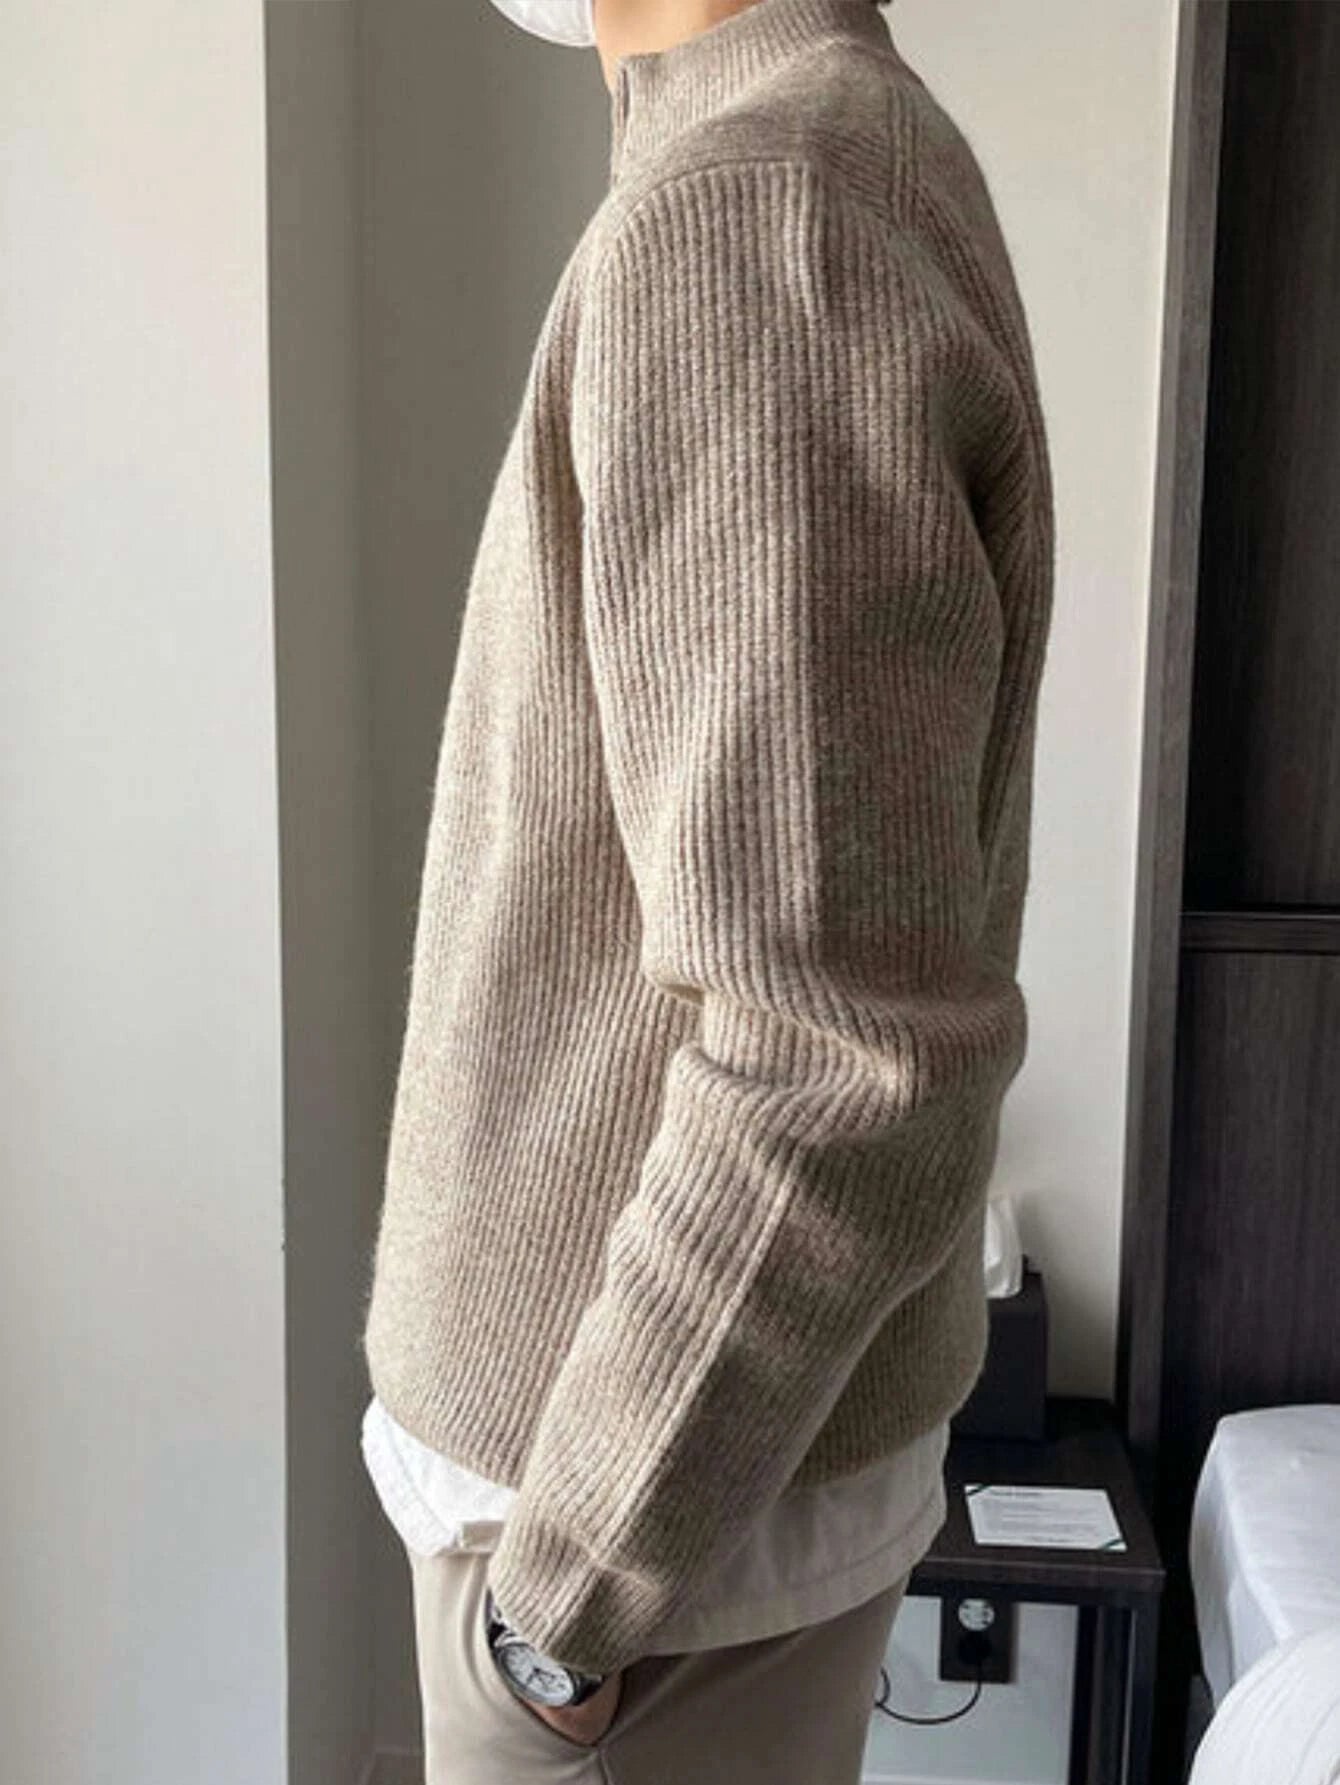 Casual Quarter Zipper Sweater